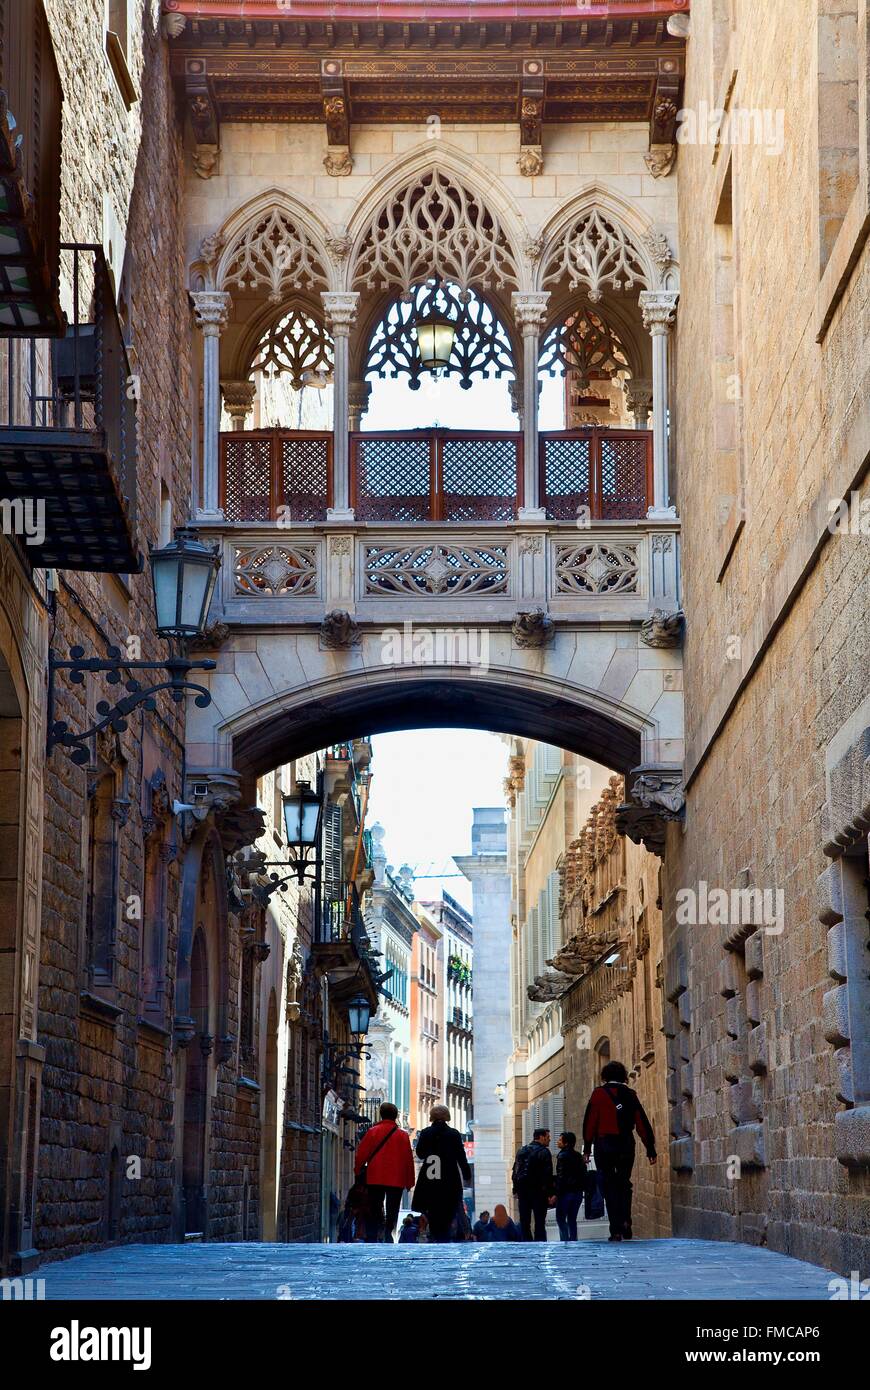 Spanien, Katalonien, Barcelona, Barrio Gotico (gotisches Viertel), Carrer del Bisbe Irurita, gotische Brücke Stockfoto